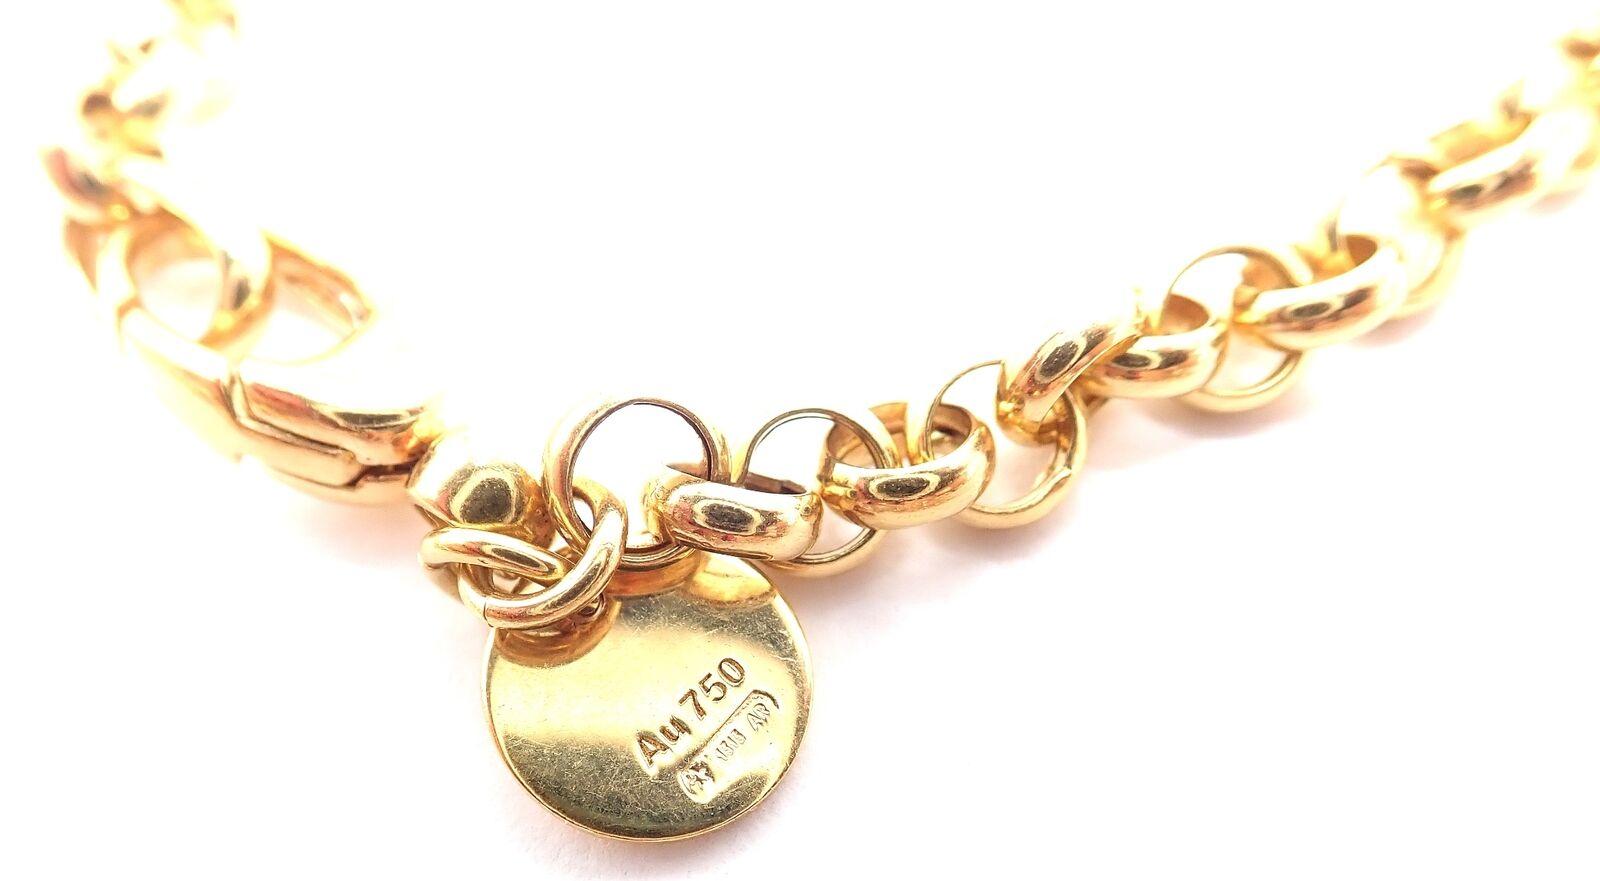 Gucci Large Horsebit Pendant Link Chain Necklace For Sale 1